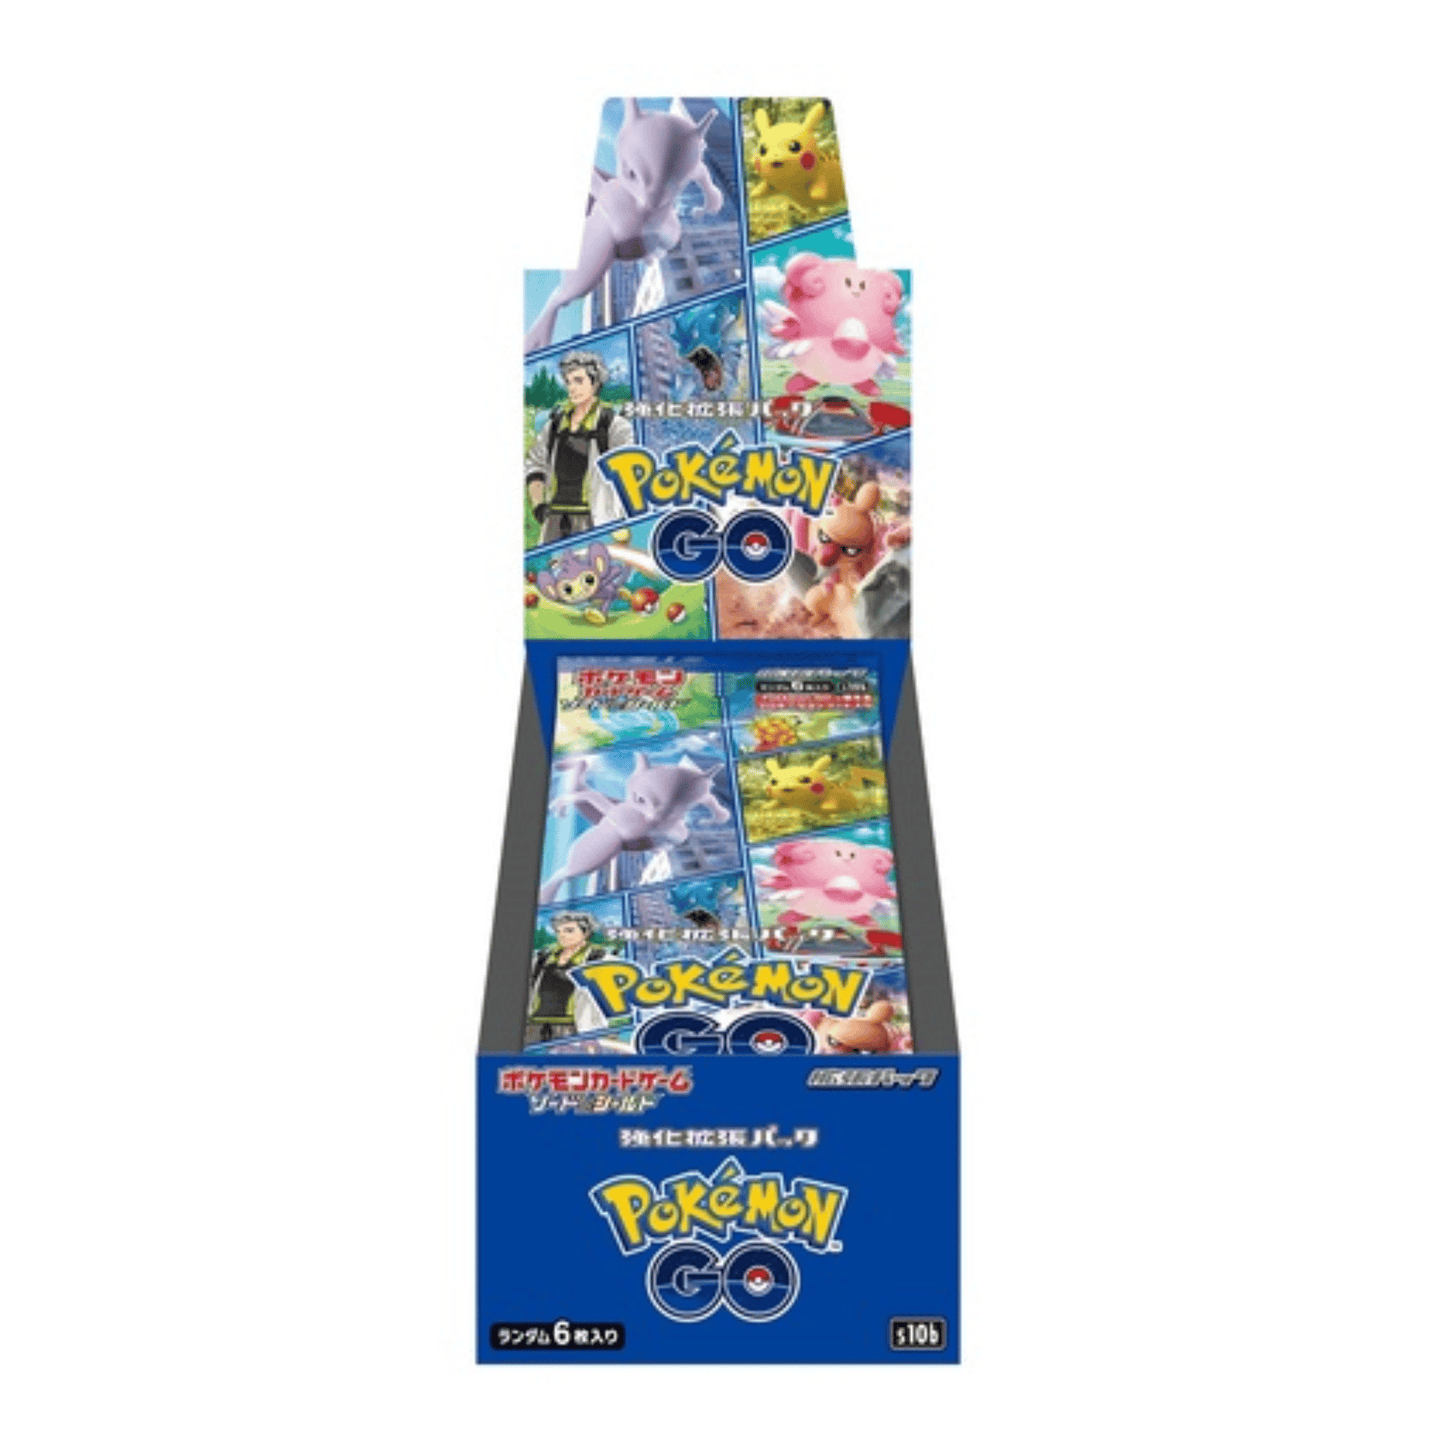 Pokémon Go s10b | Caixa de reforço/display